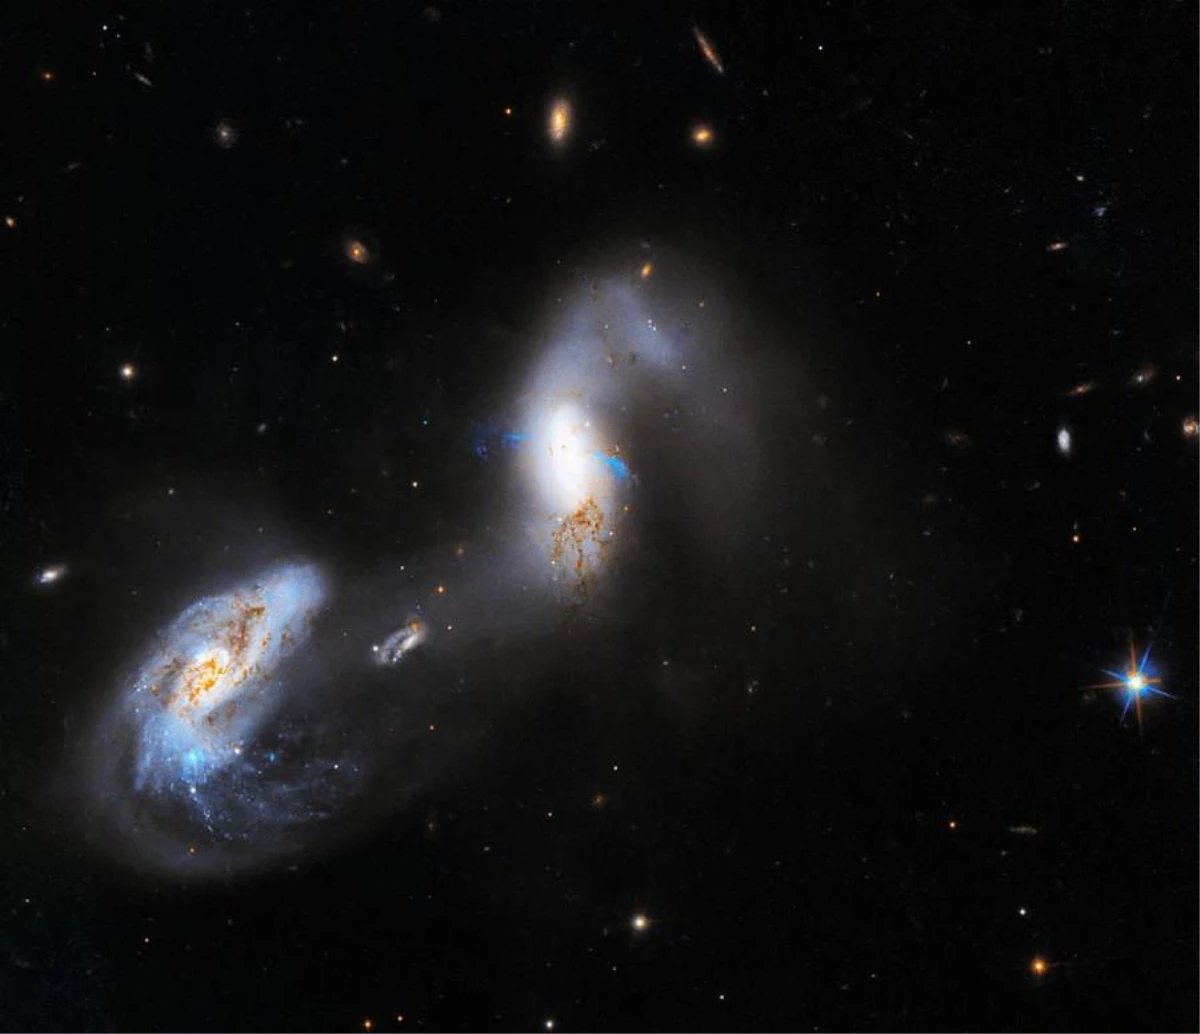 Nasanın Hubble Uzay Teleskobu Olağanüstü Parlak Galaksileri Fotoğrafladı